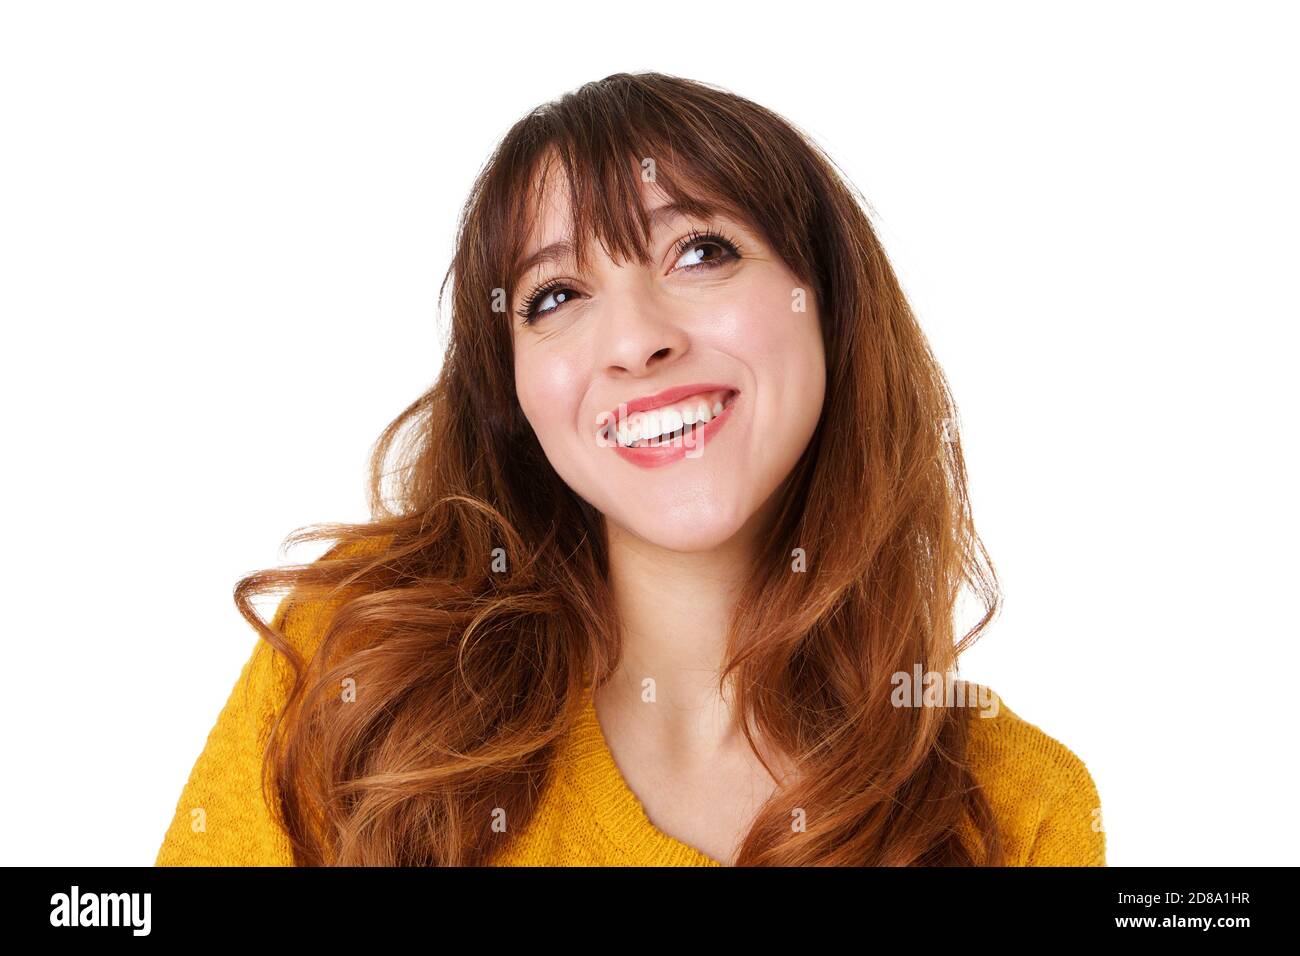 Nahaufnahme Porträt der glücklichen jungen Frau suchen auf Isolierter weißer Hintergrund Stockfoto